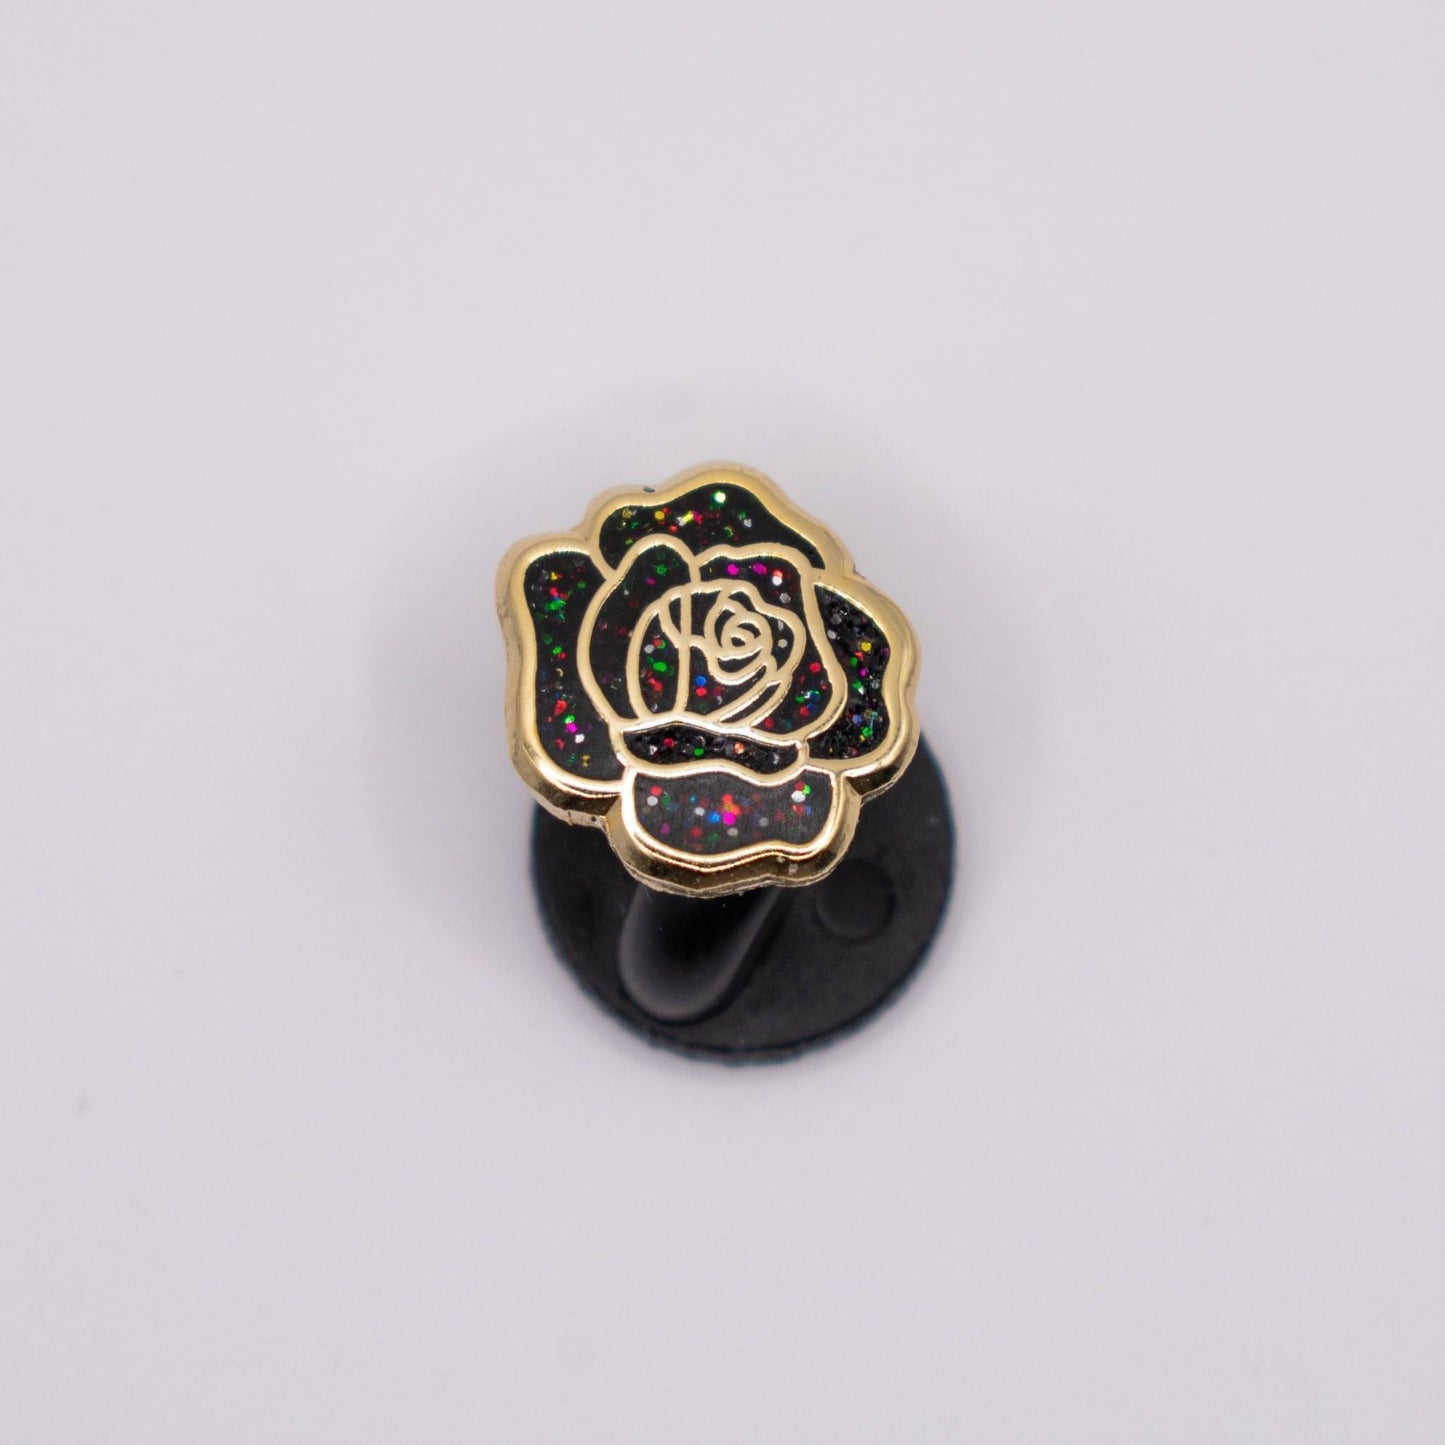 Mini Rose Enamel Pin